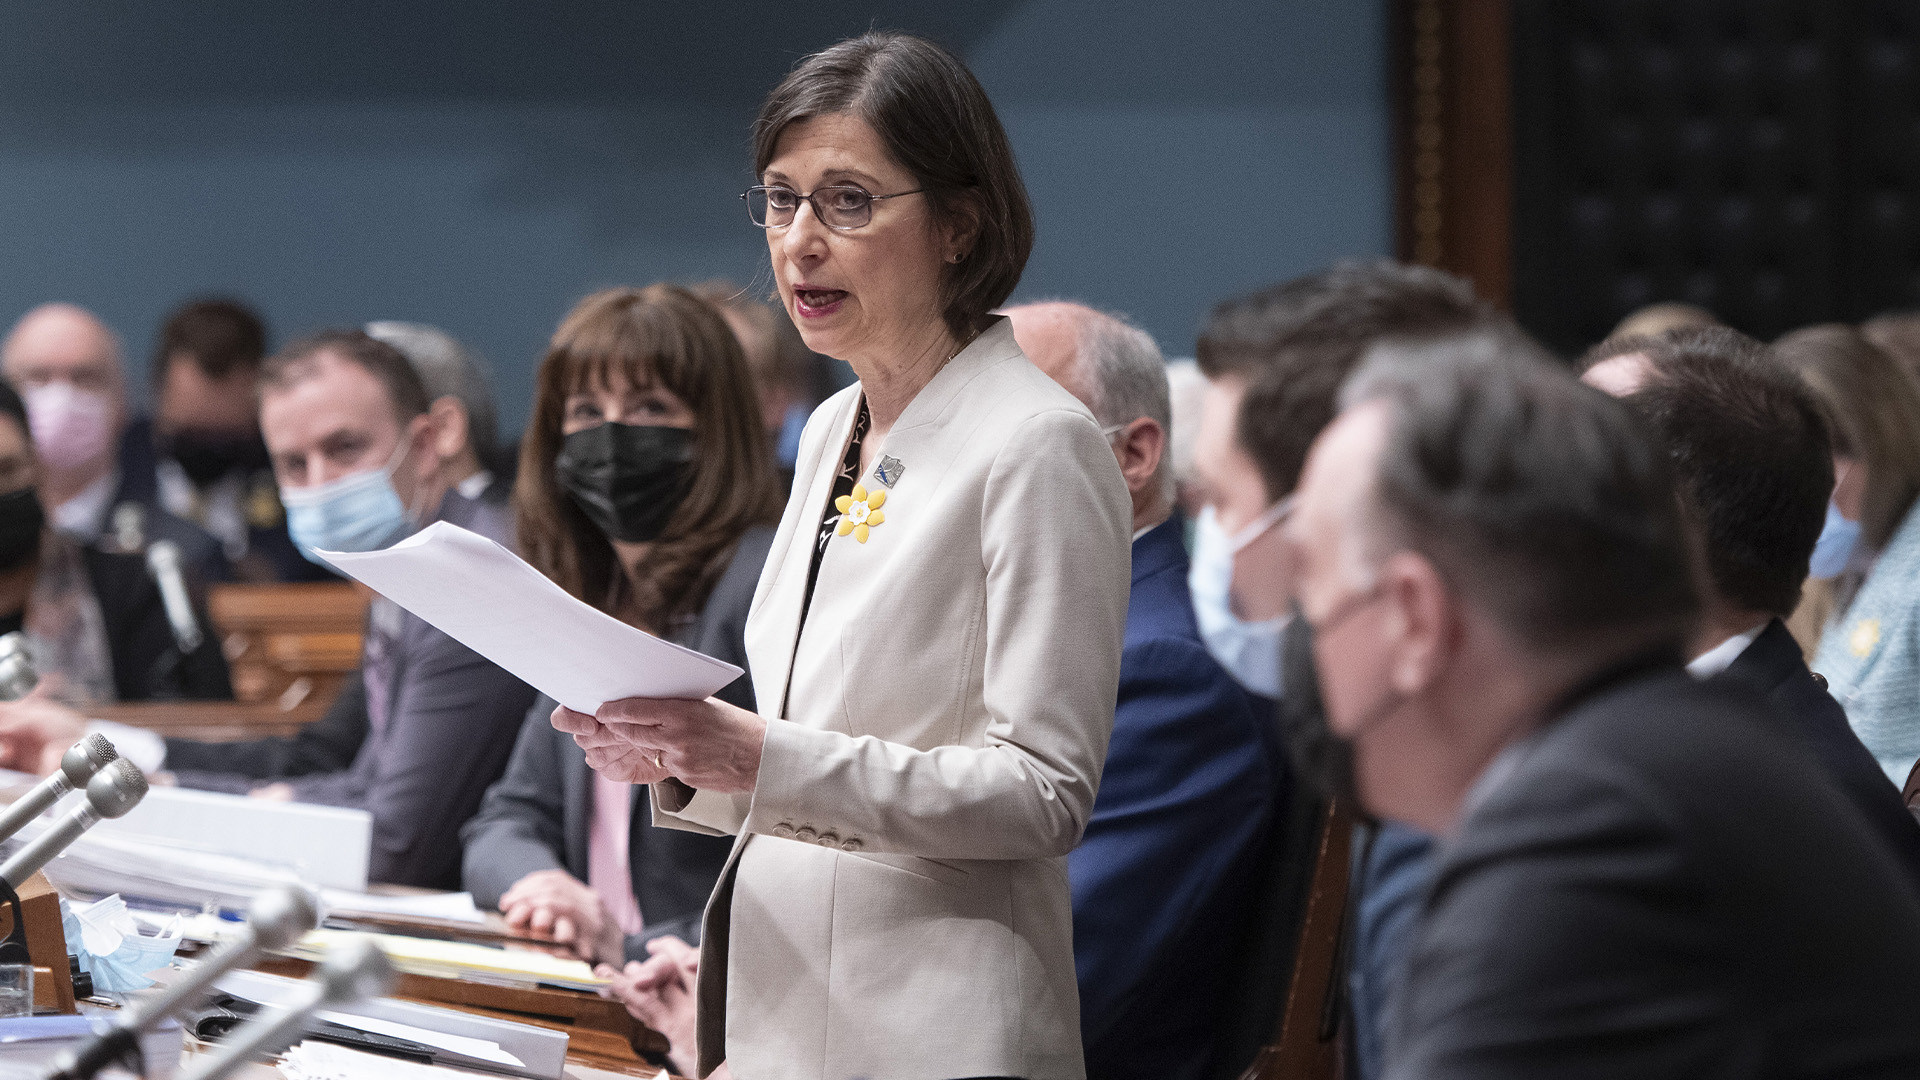 La ministre de l'Enseignement supérieur du Québec, Danielle McCann, dépose un projet de loi le mercredi 6 avril 2022 à l'Assemblée législative de Québec.